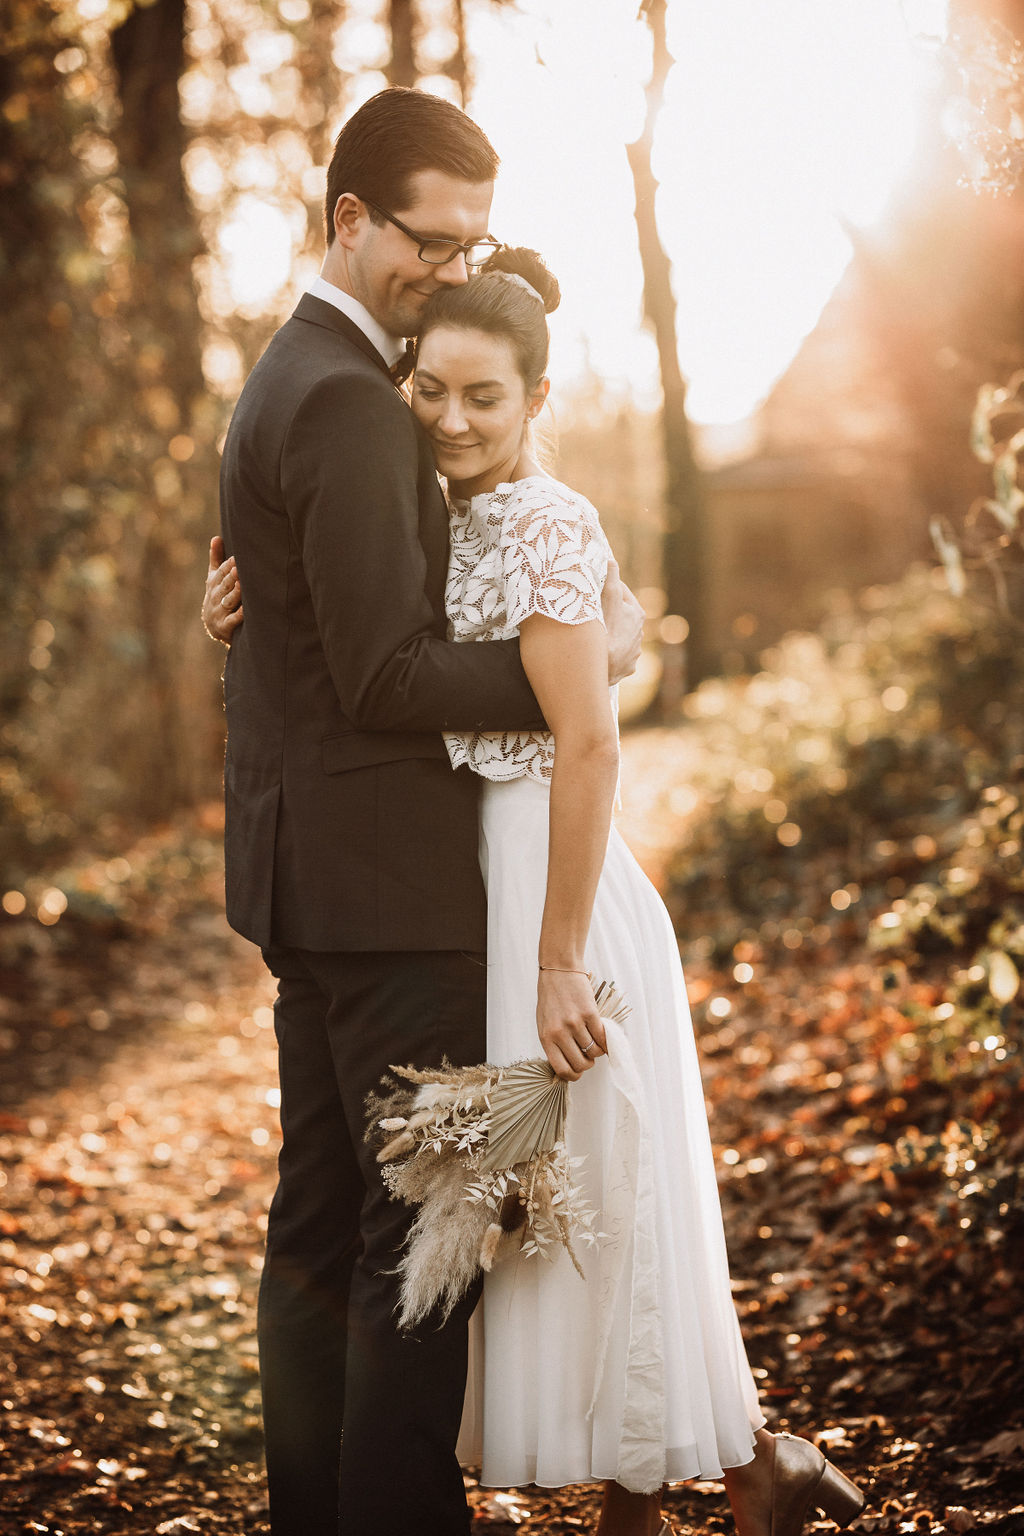 noni Brautmode, Hochzeitsshooting im Wald, Brautpaar händchenhaltend mit Sonneneinfall im Hintergrund. Bräutigam mit dunklem Anzug, Braut in Kurzarm-Kleid mit Boho-Spitze, sich umarmend